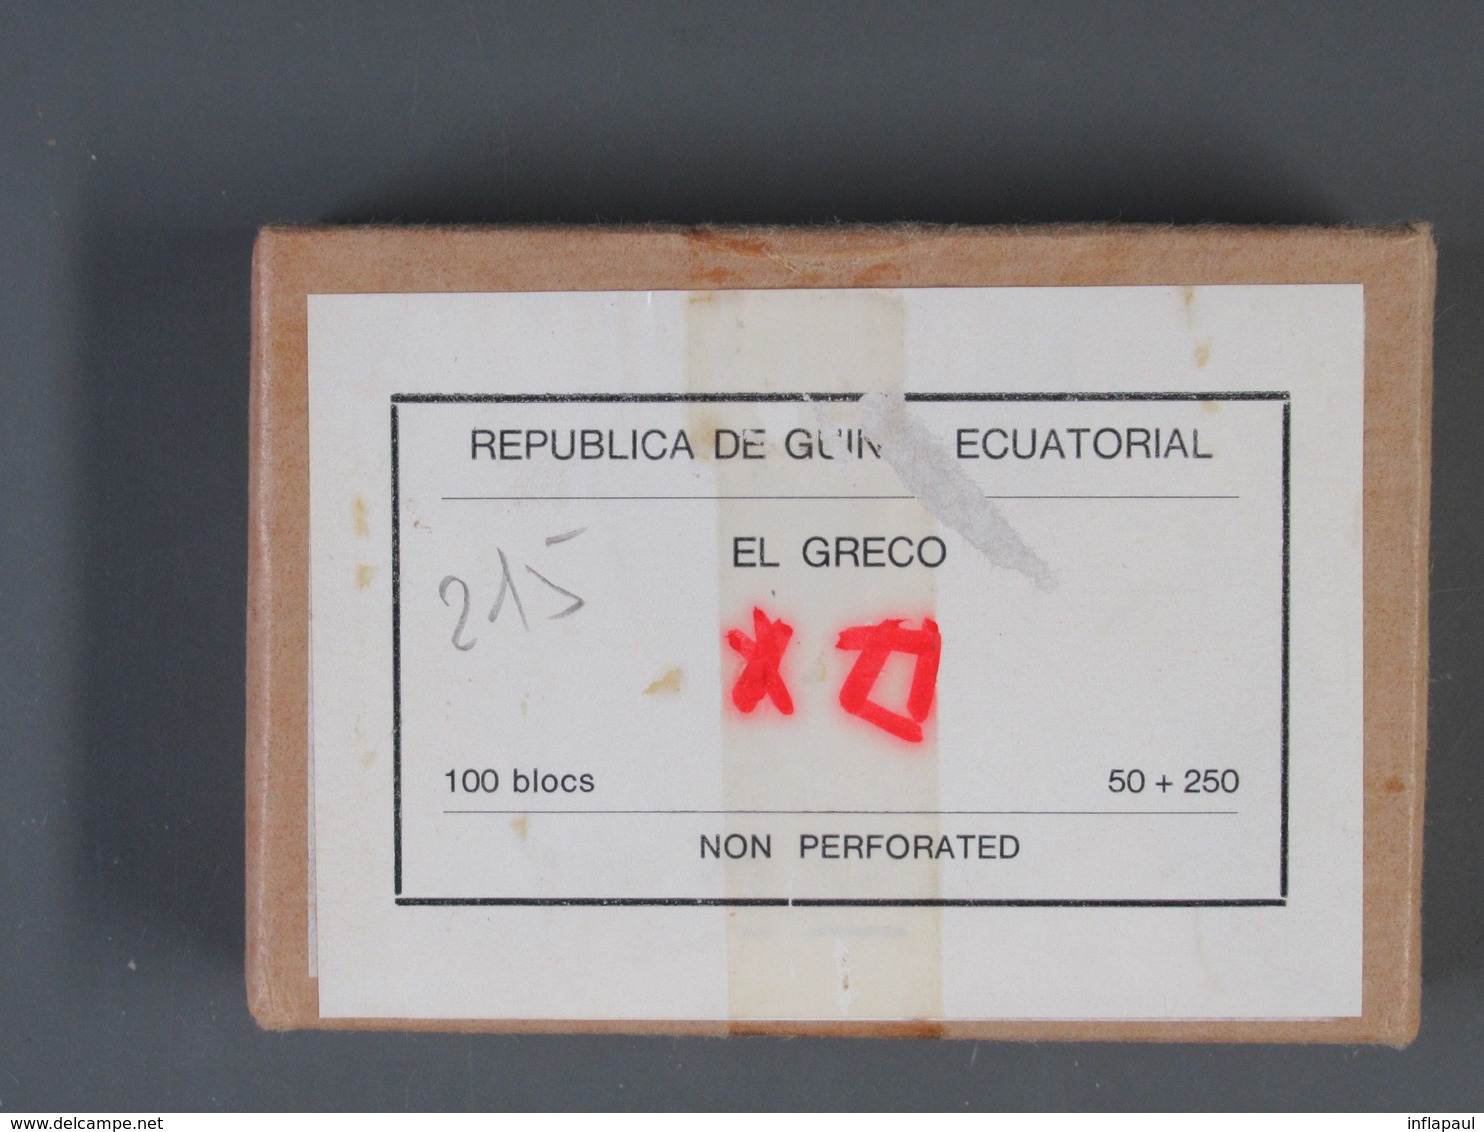 Äquatorialguinea - 20 versch.Blöcke per 100 also 2000 Blöcke postfrisch MNH (2233)